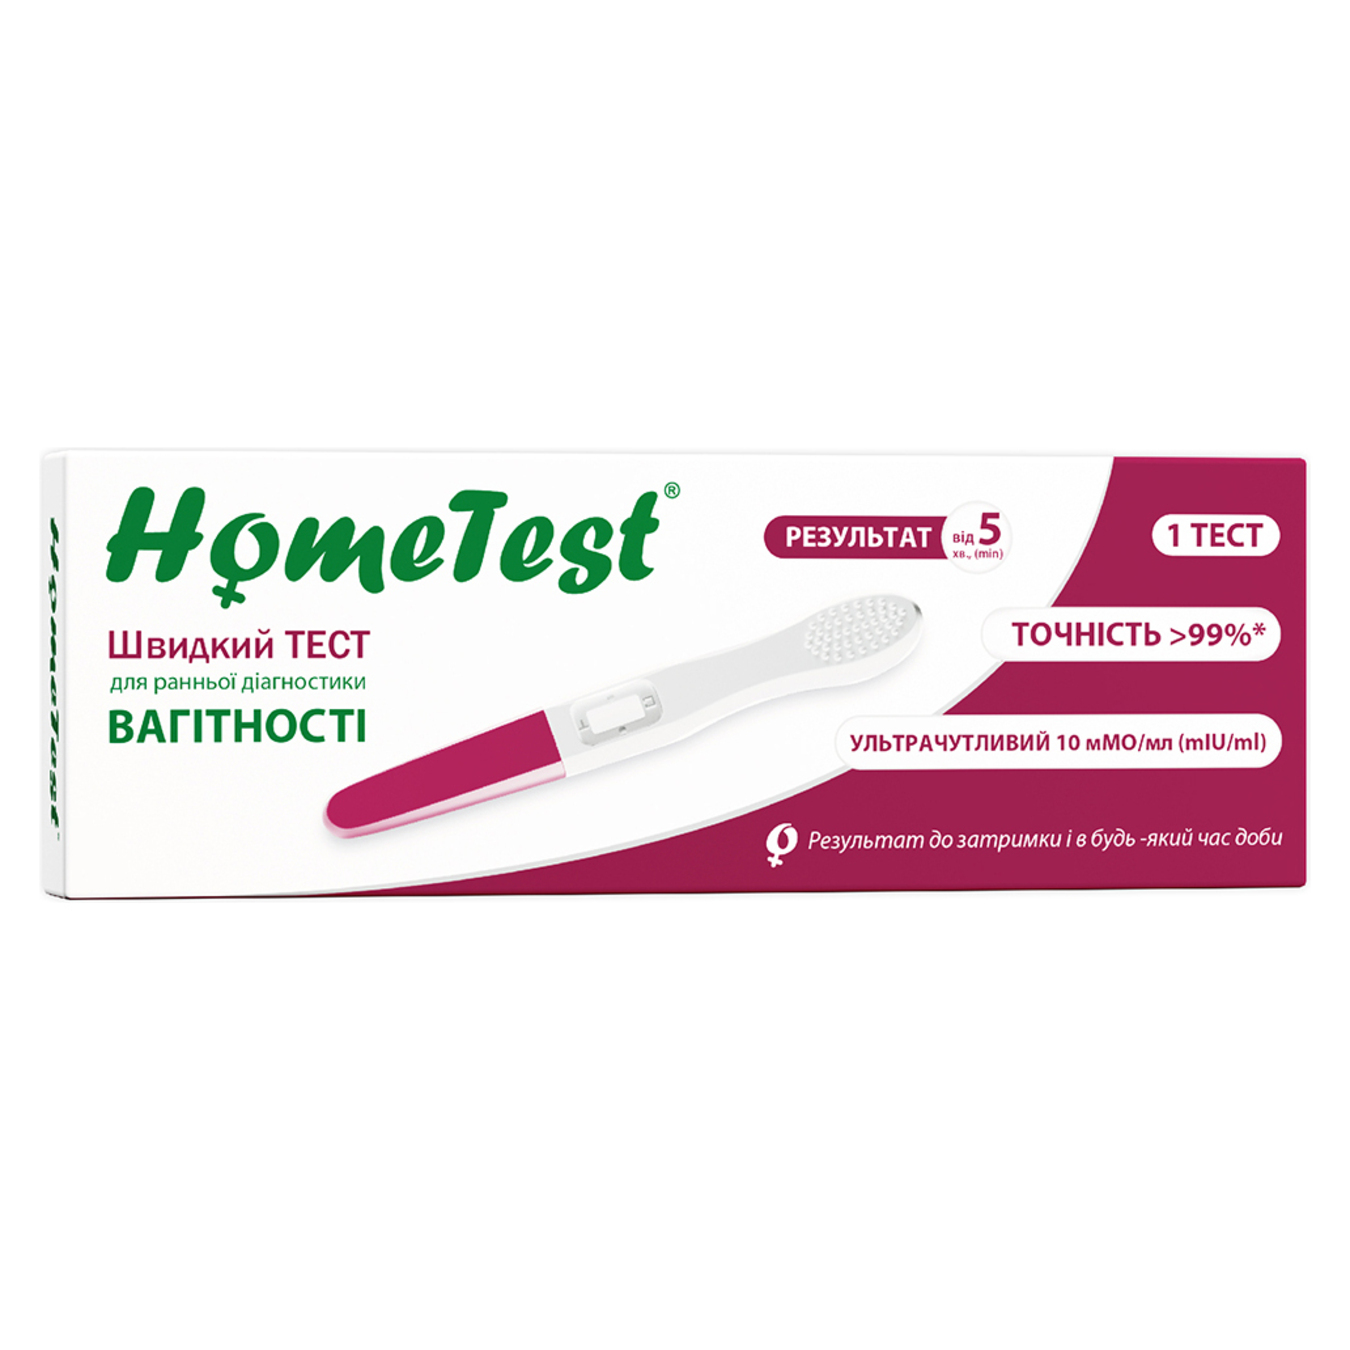 Тест HomeTest струйный для ранней диагностики беременности 1 шт в упаковке